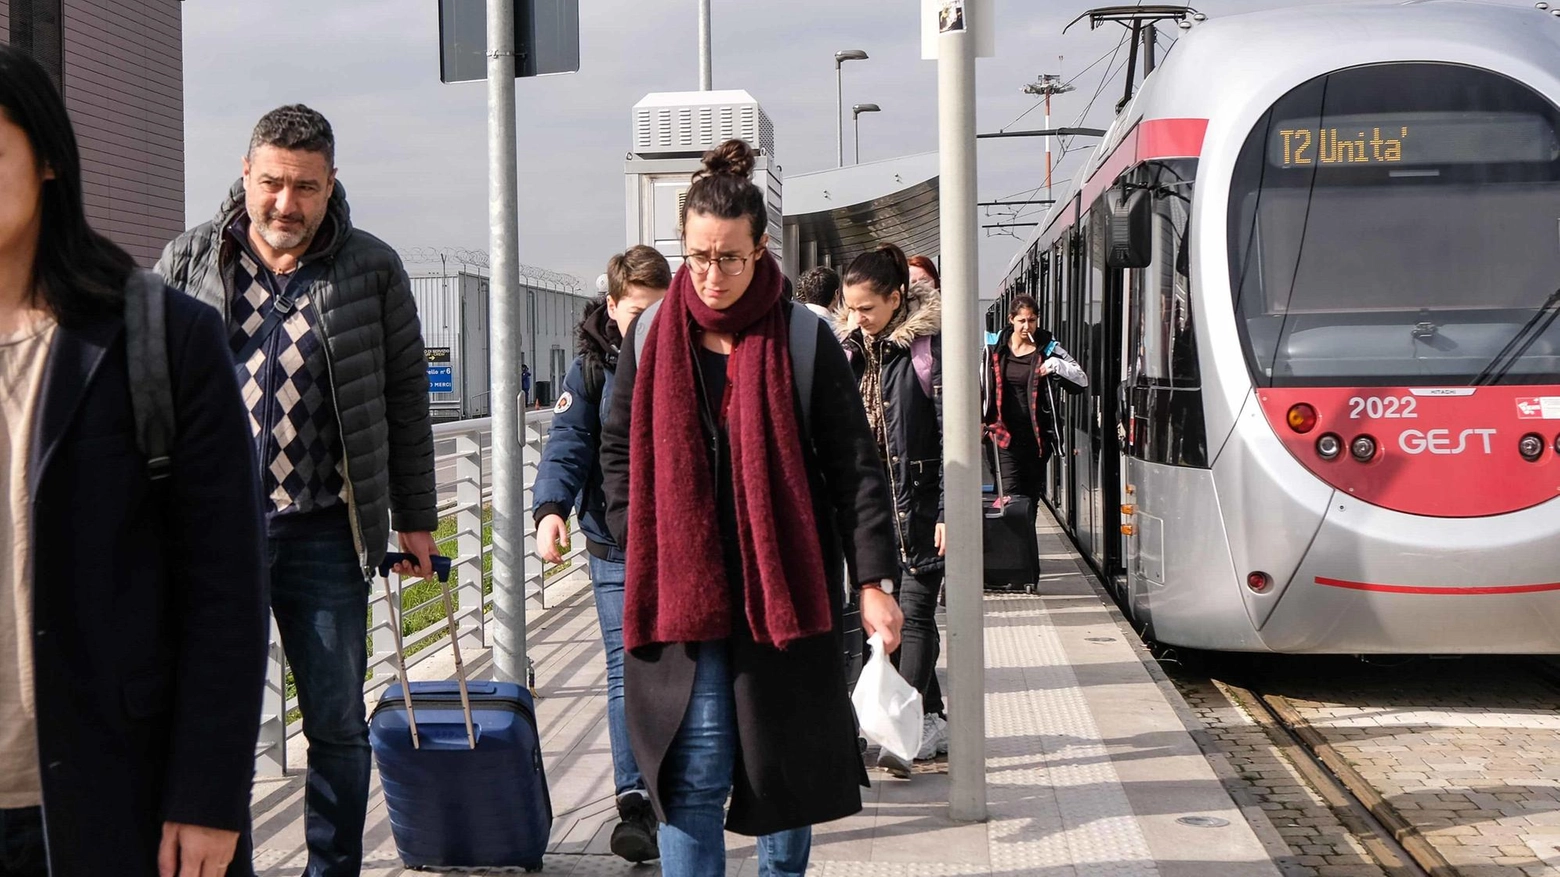 La lista civica "Firenze Rinasce" critica il prolungamento della tramvia verso Sesto come costoso, inutile e su un tracciato sbagliato, preferendo invece lo sviluppo della ferrovia e dei bus su ruota.